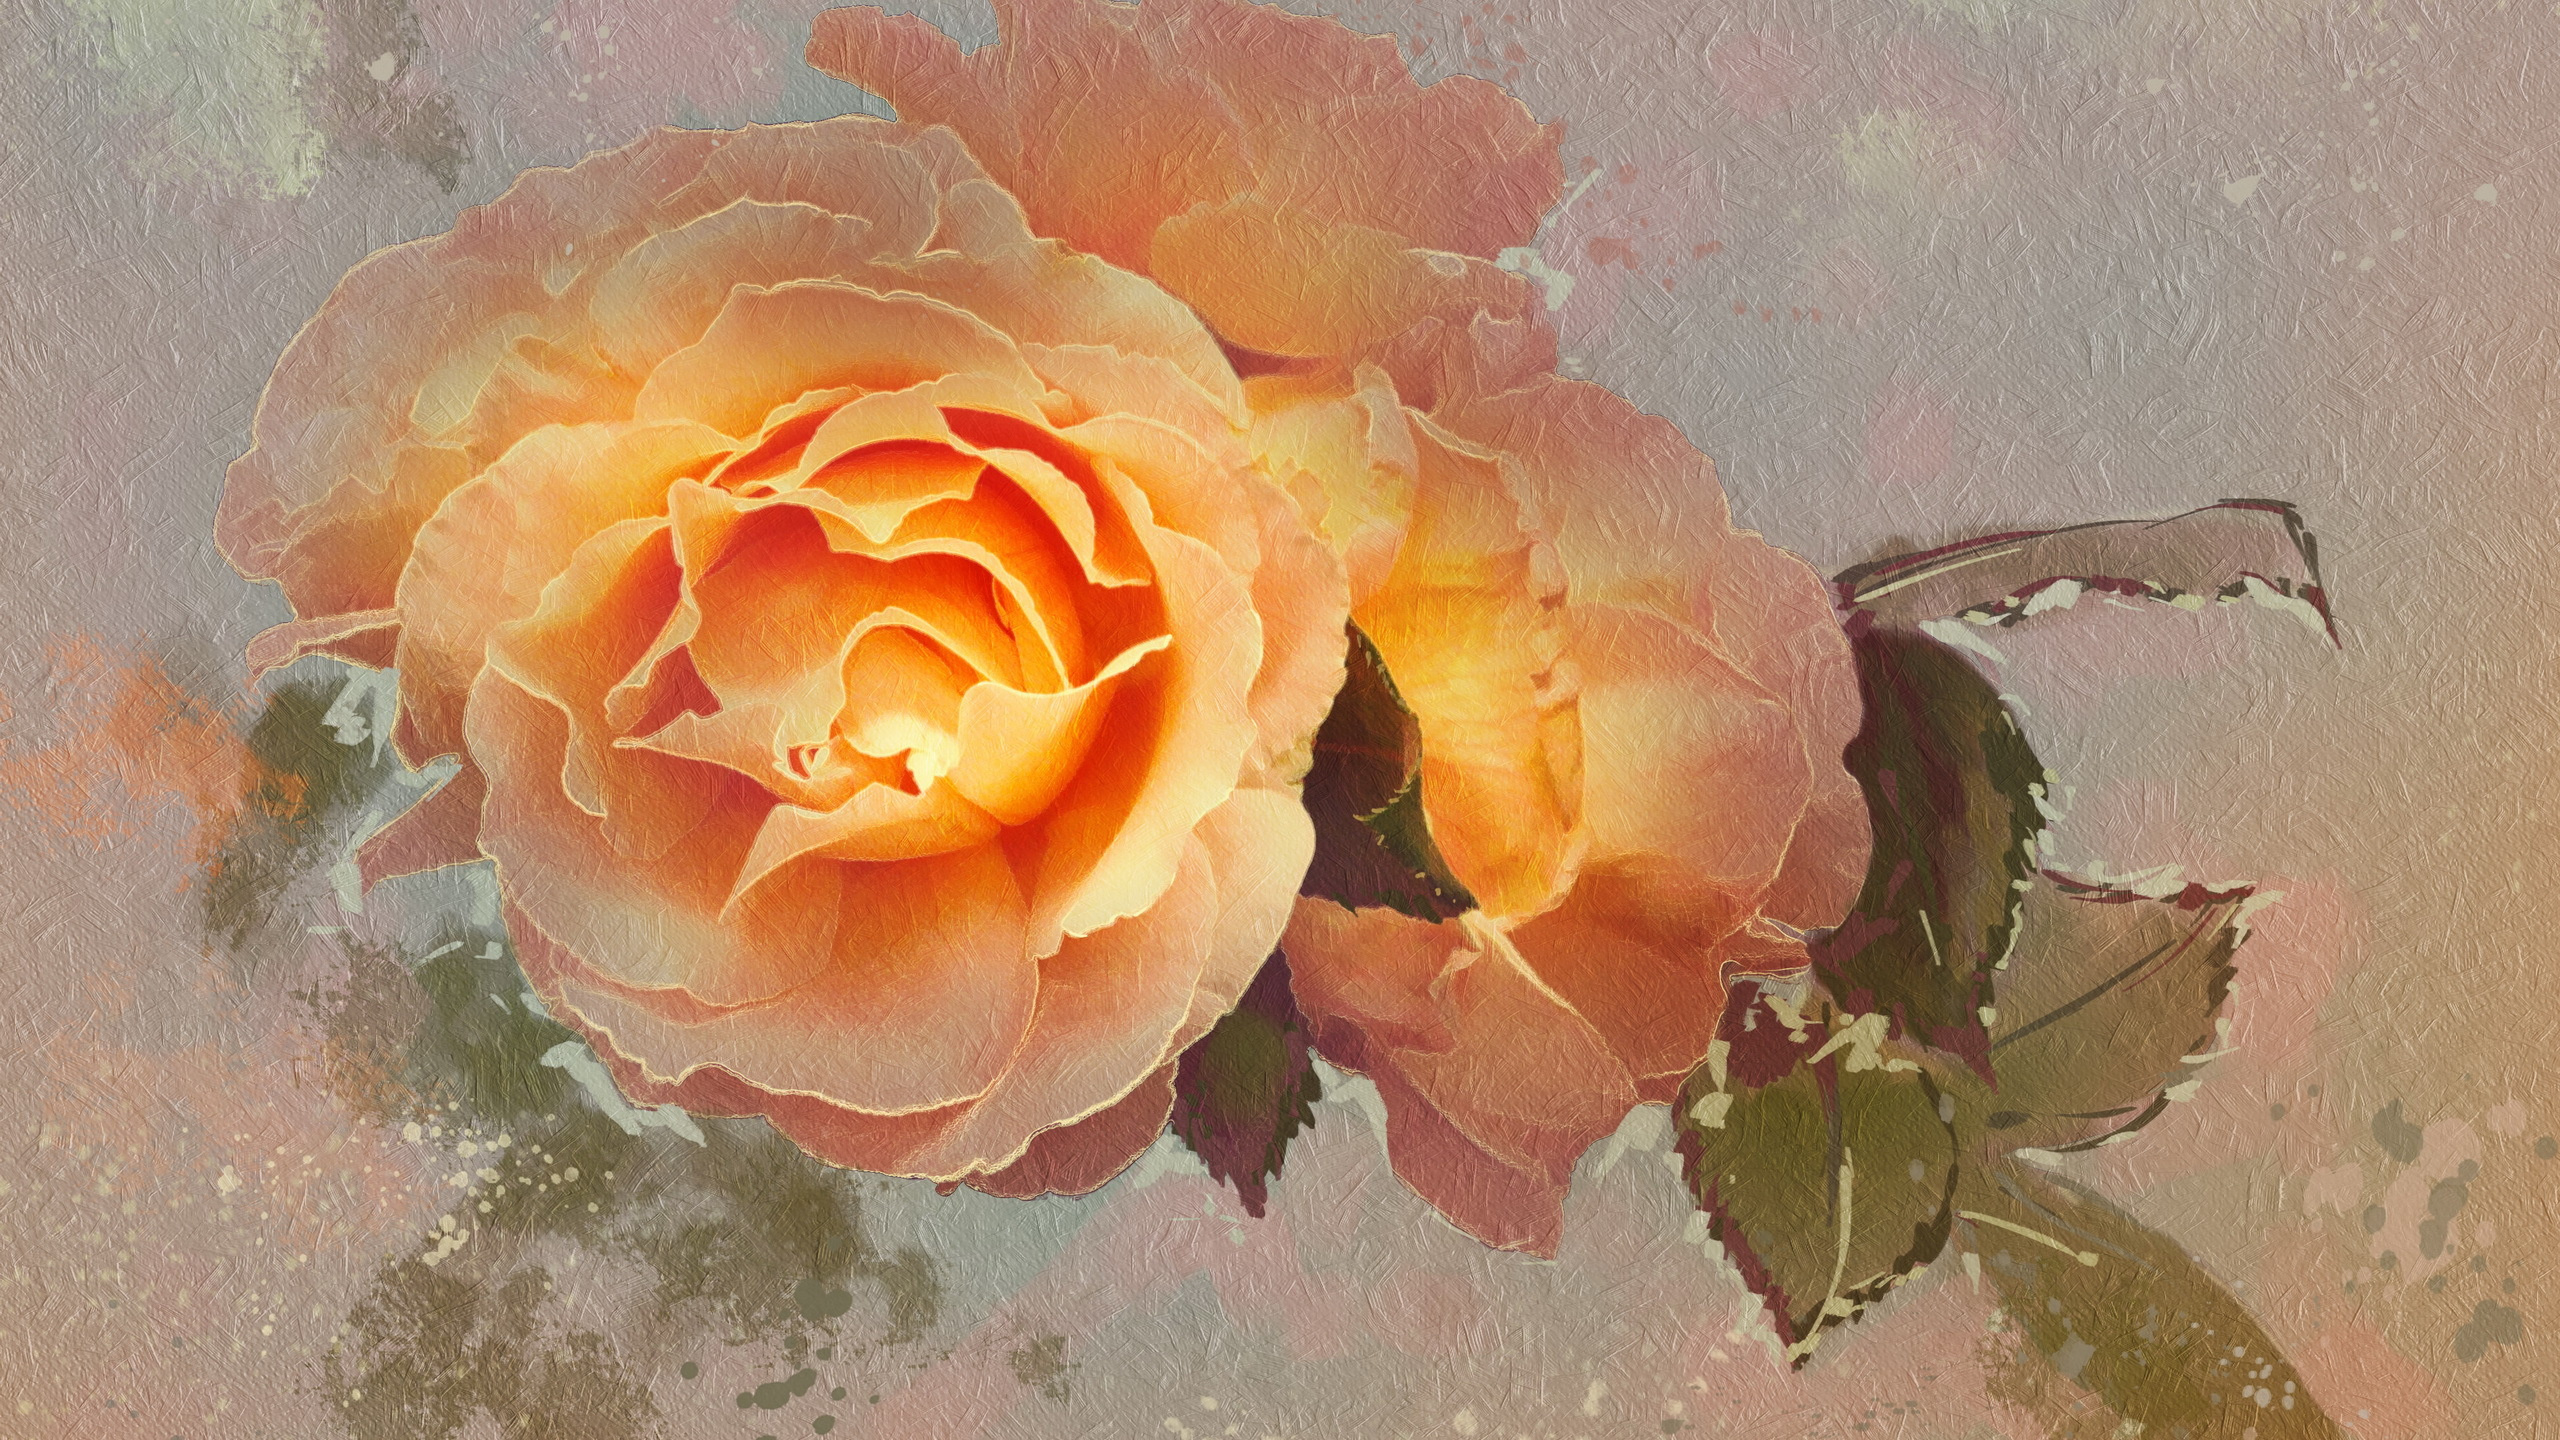 玫瑰花园, 纹理, 黄色的, 玫瑰家庭, 罗莎千叶 壁纸 2560x1440 允许